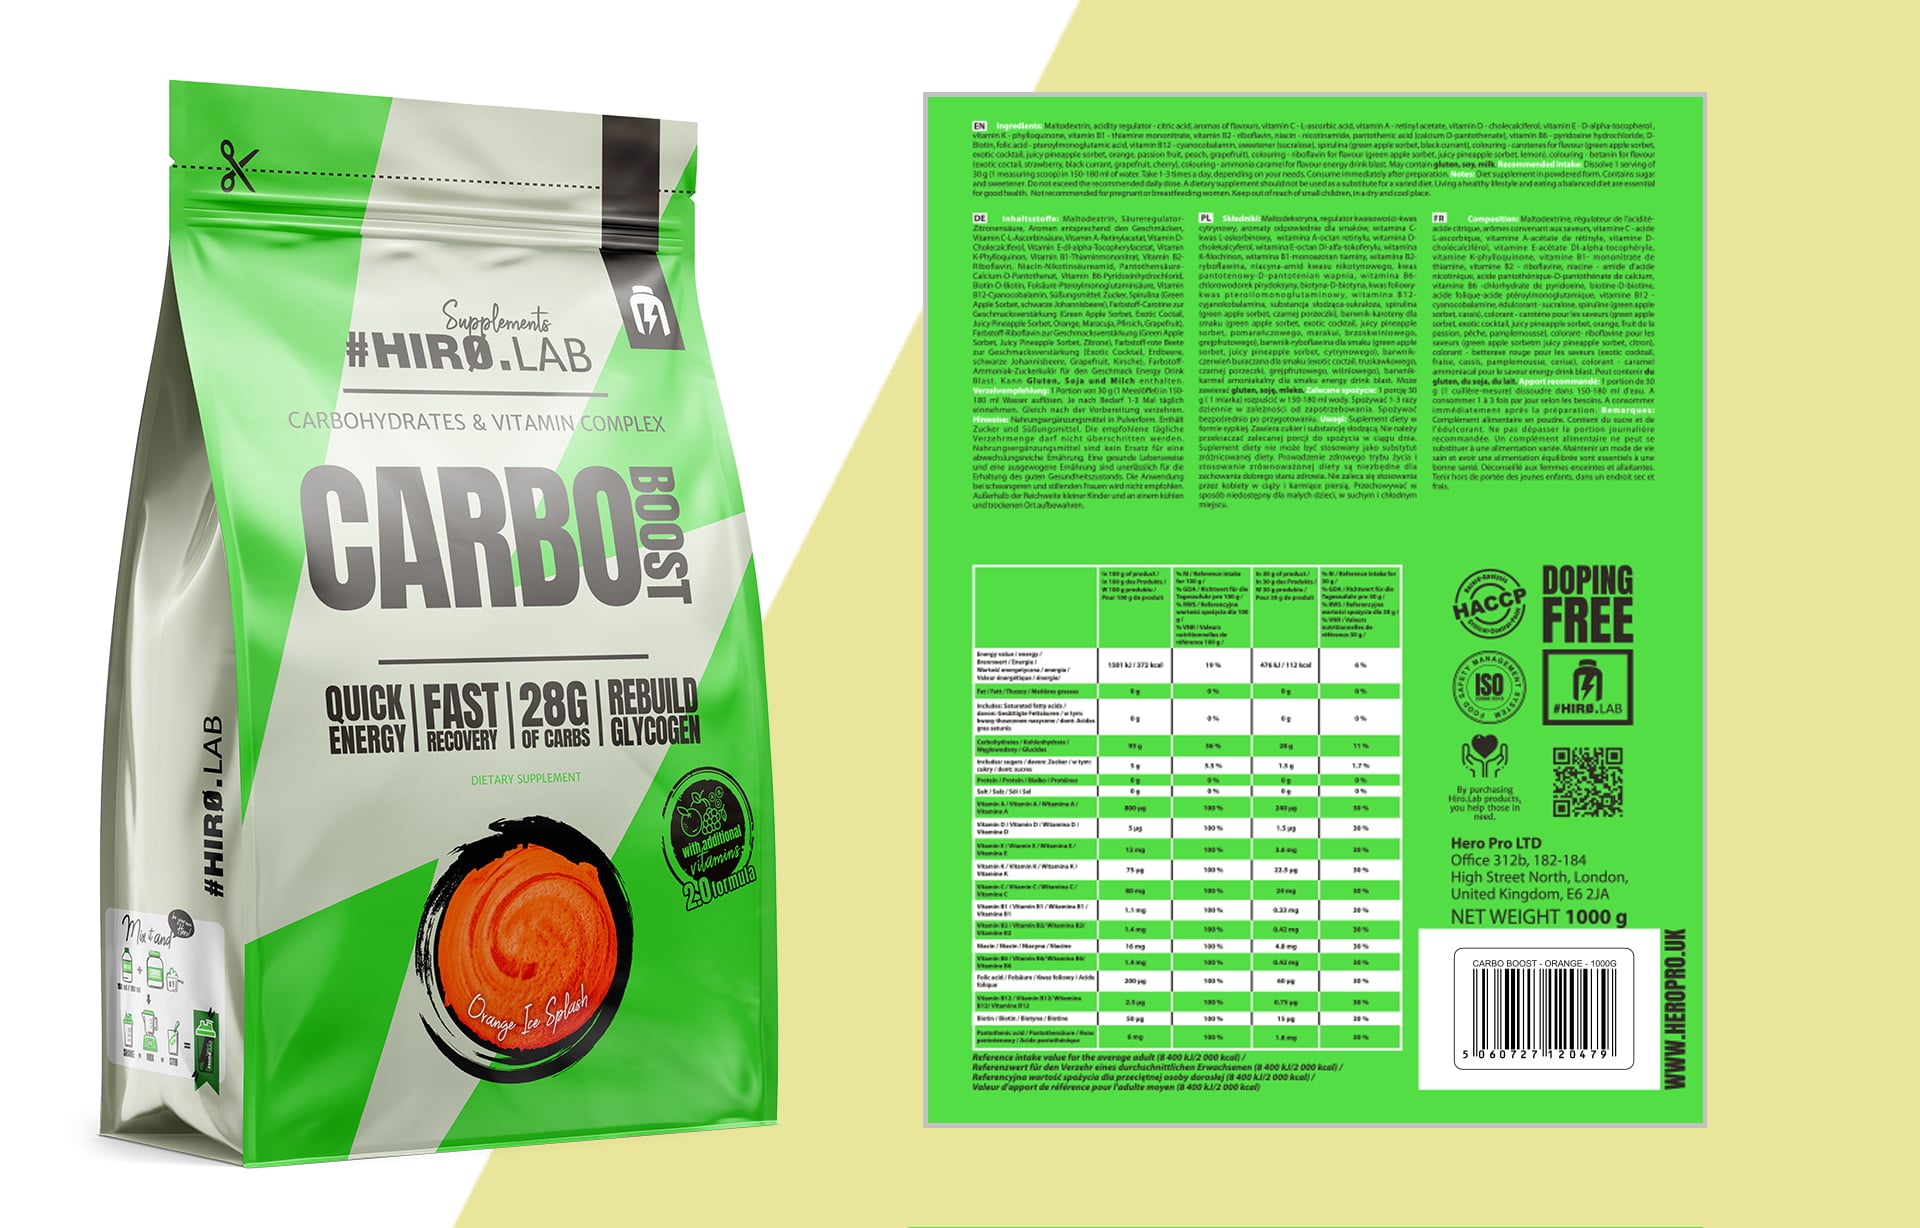 Hiro.Lab Carbo Boost - odżywka węglowodanowa z witaminami